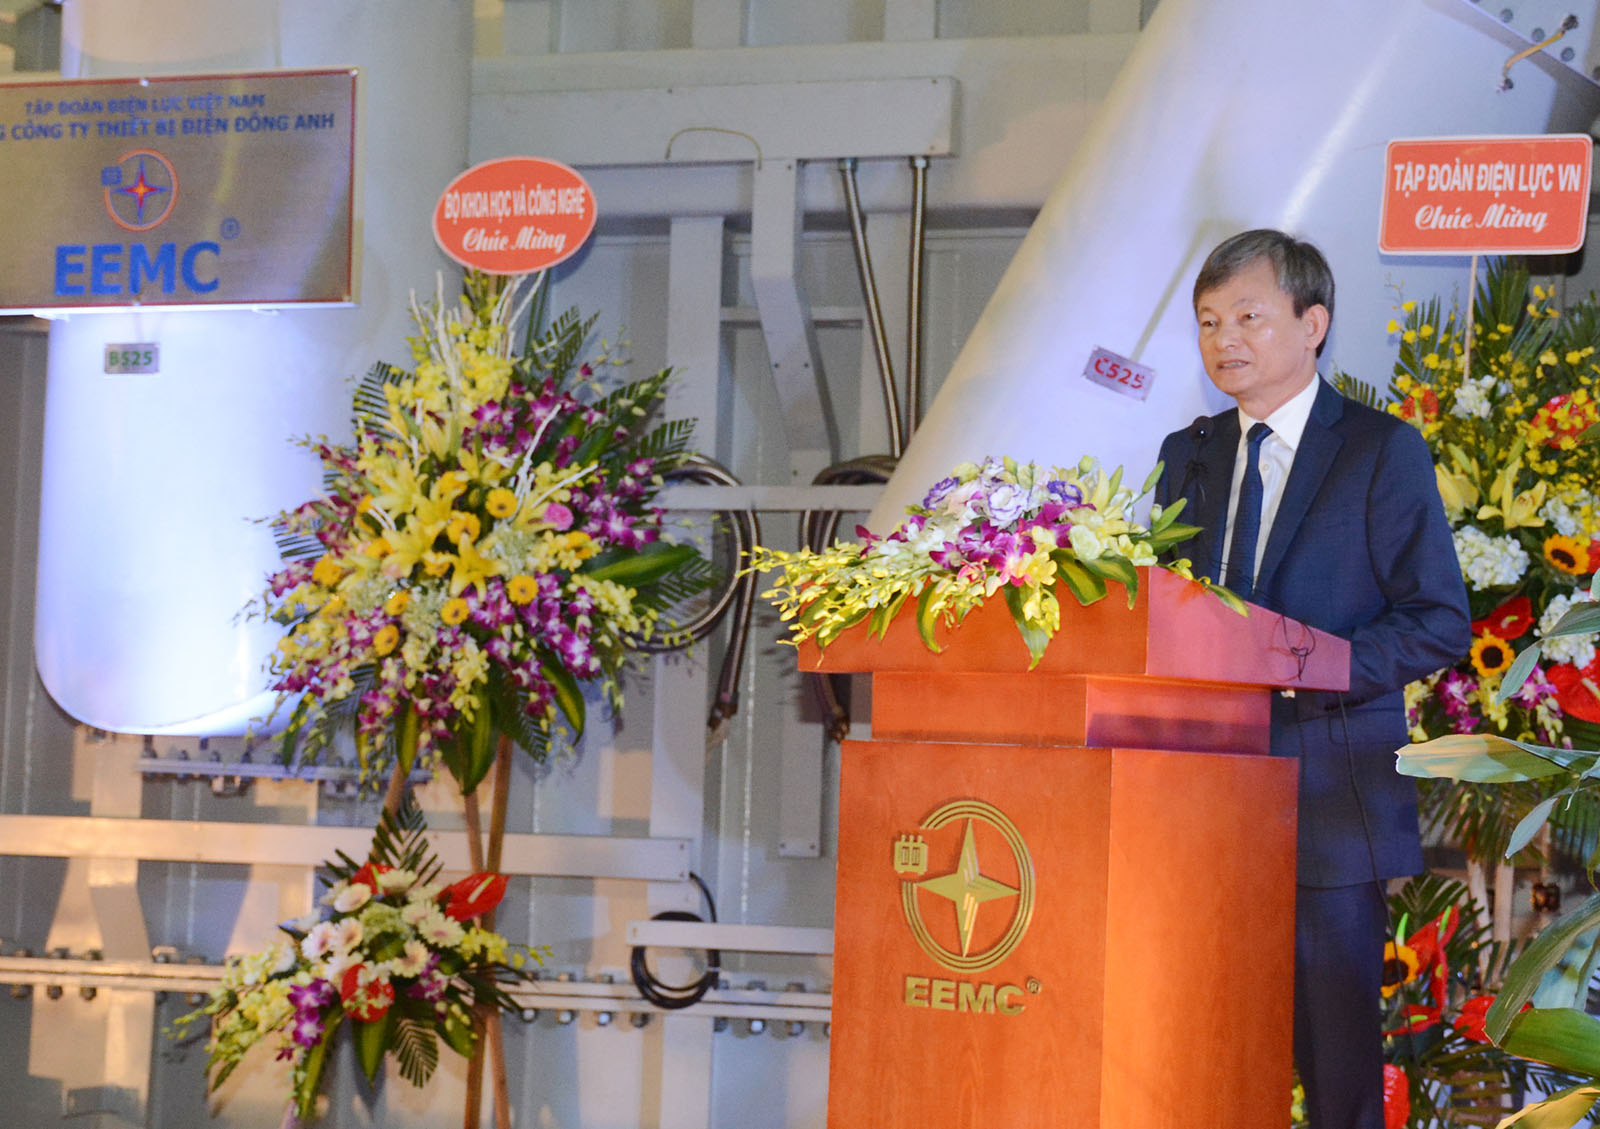 Ông Trần Đình Nhân – Tổng Giám đốc Tập đoàn Điện lực Việt Nam kỳ vọng EEMC sẽ tiếp tục sản xuất thêm nhiều máy biến áp 500kV với công suất lớn hơn